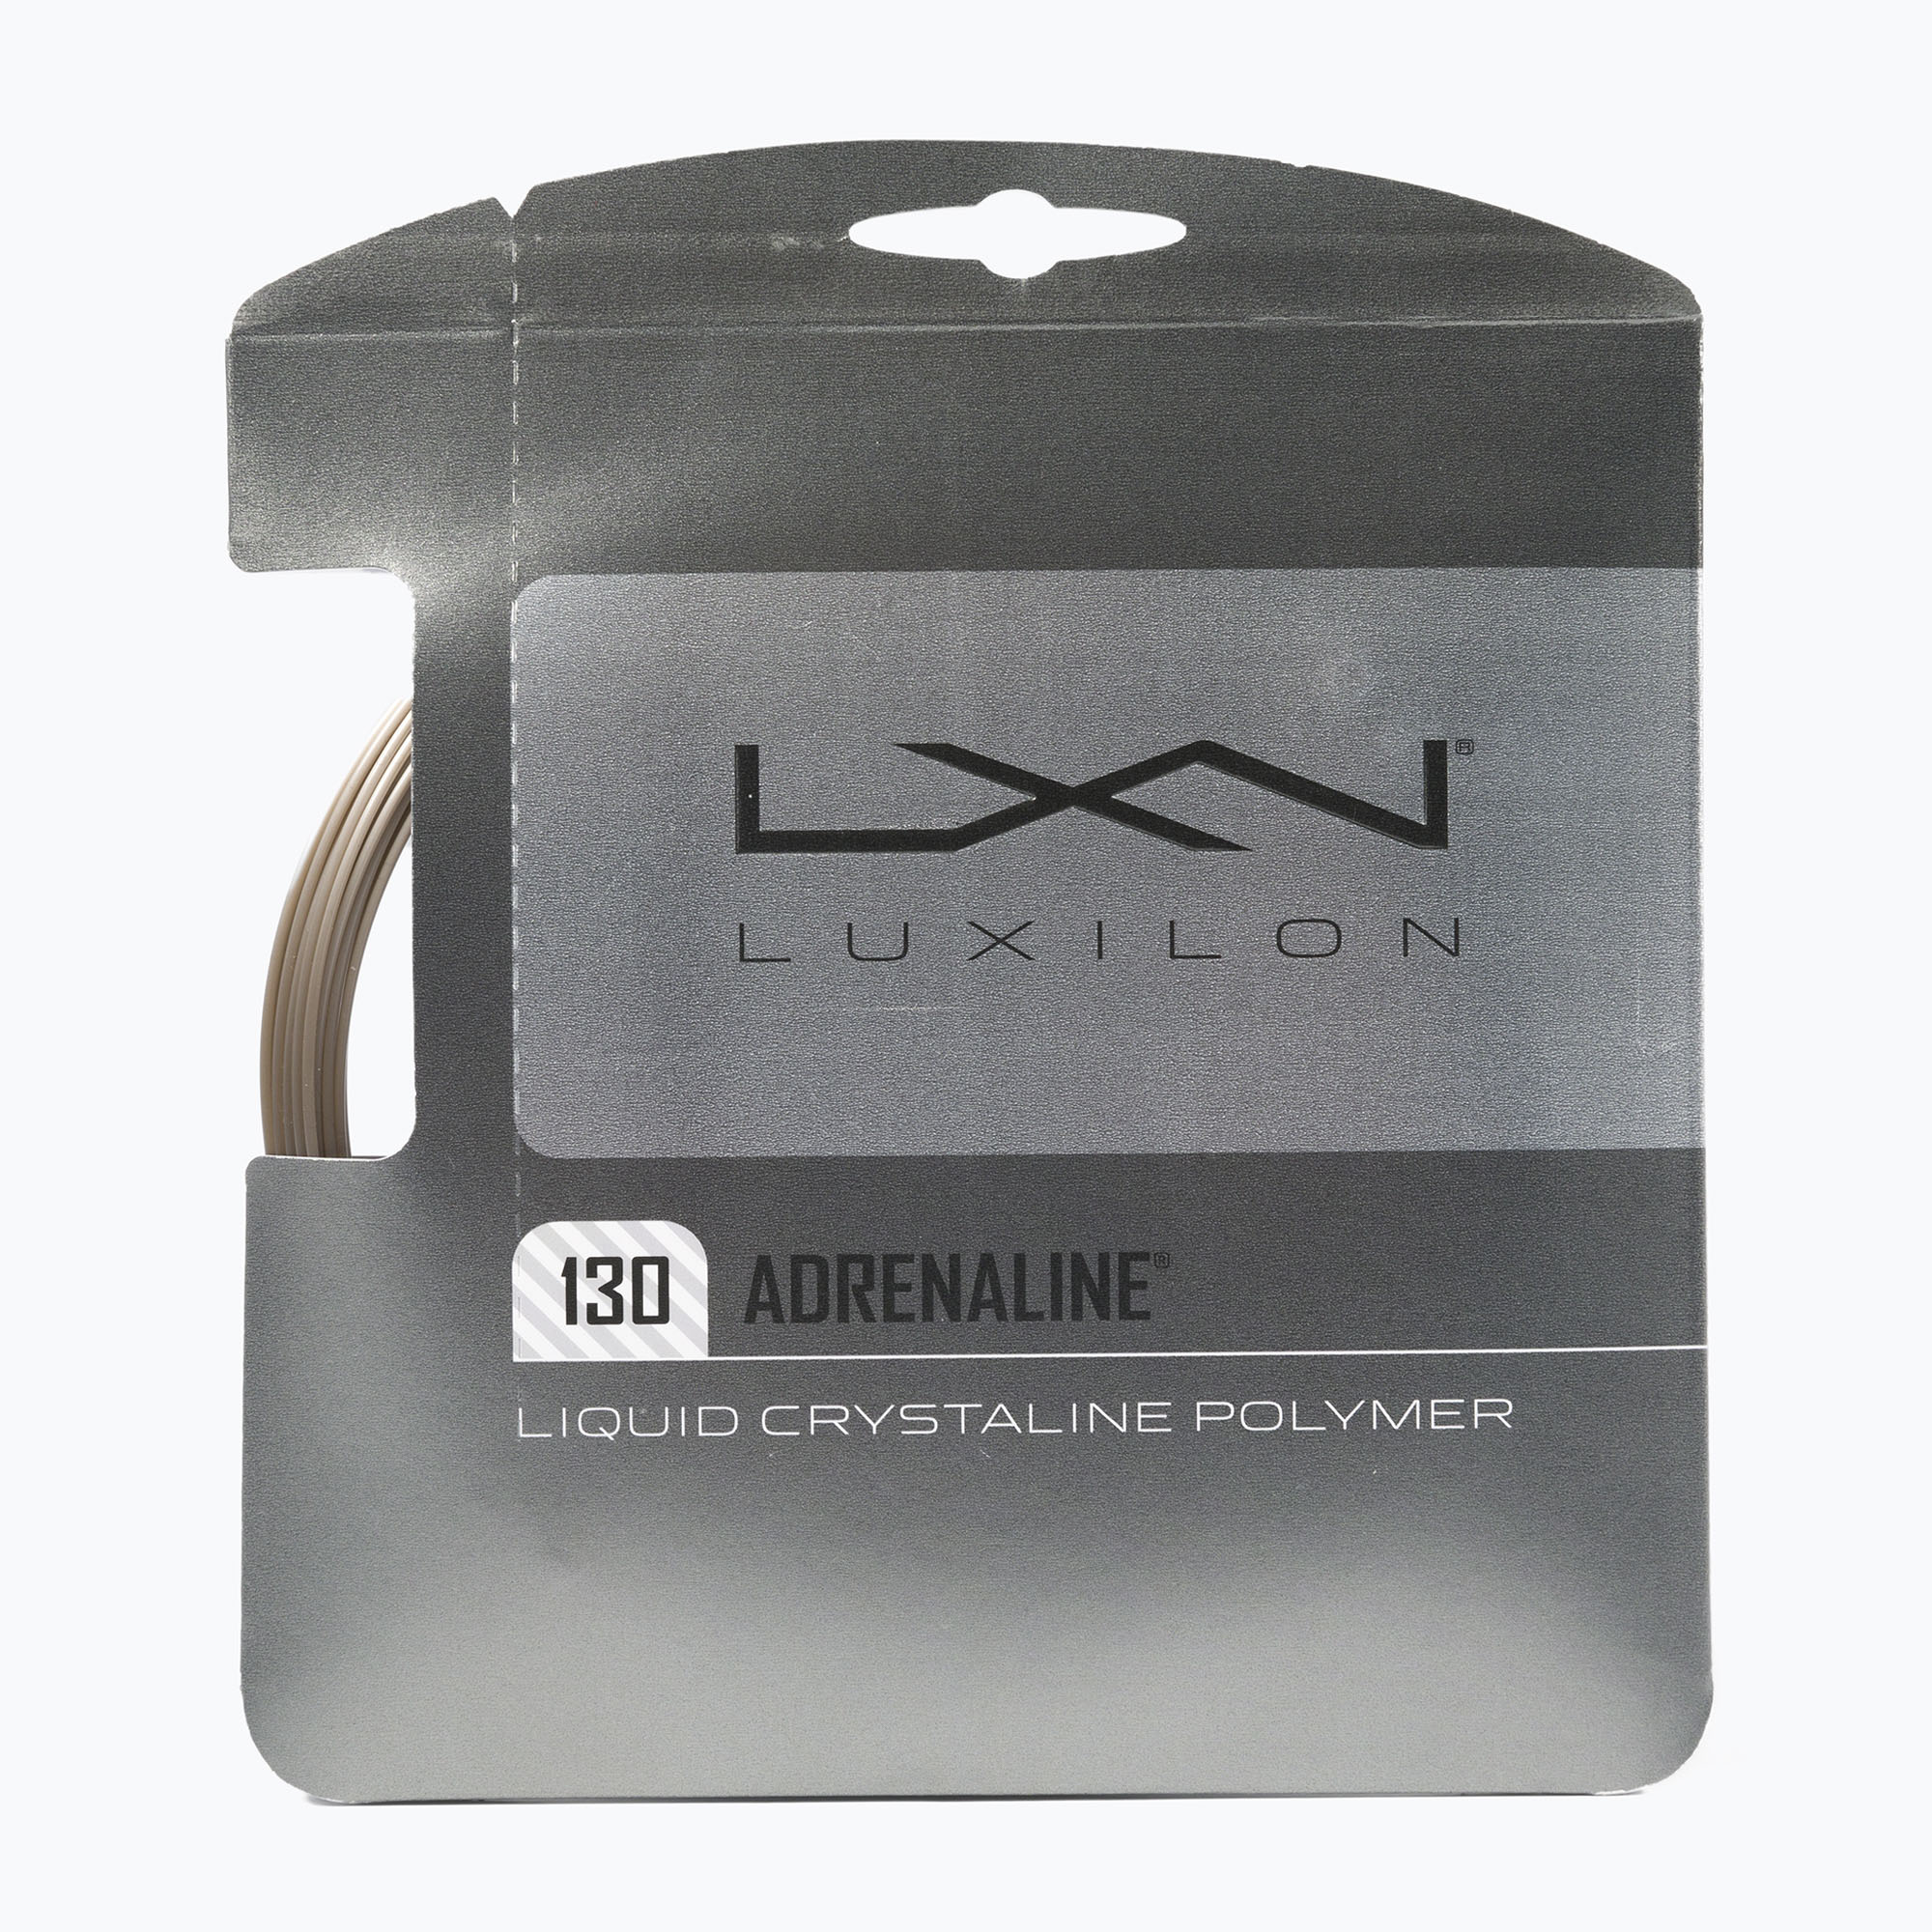 Tenisové struny Luxilon Adrenaline 130 Set12,2m sivé WRZ993900